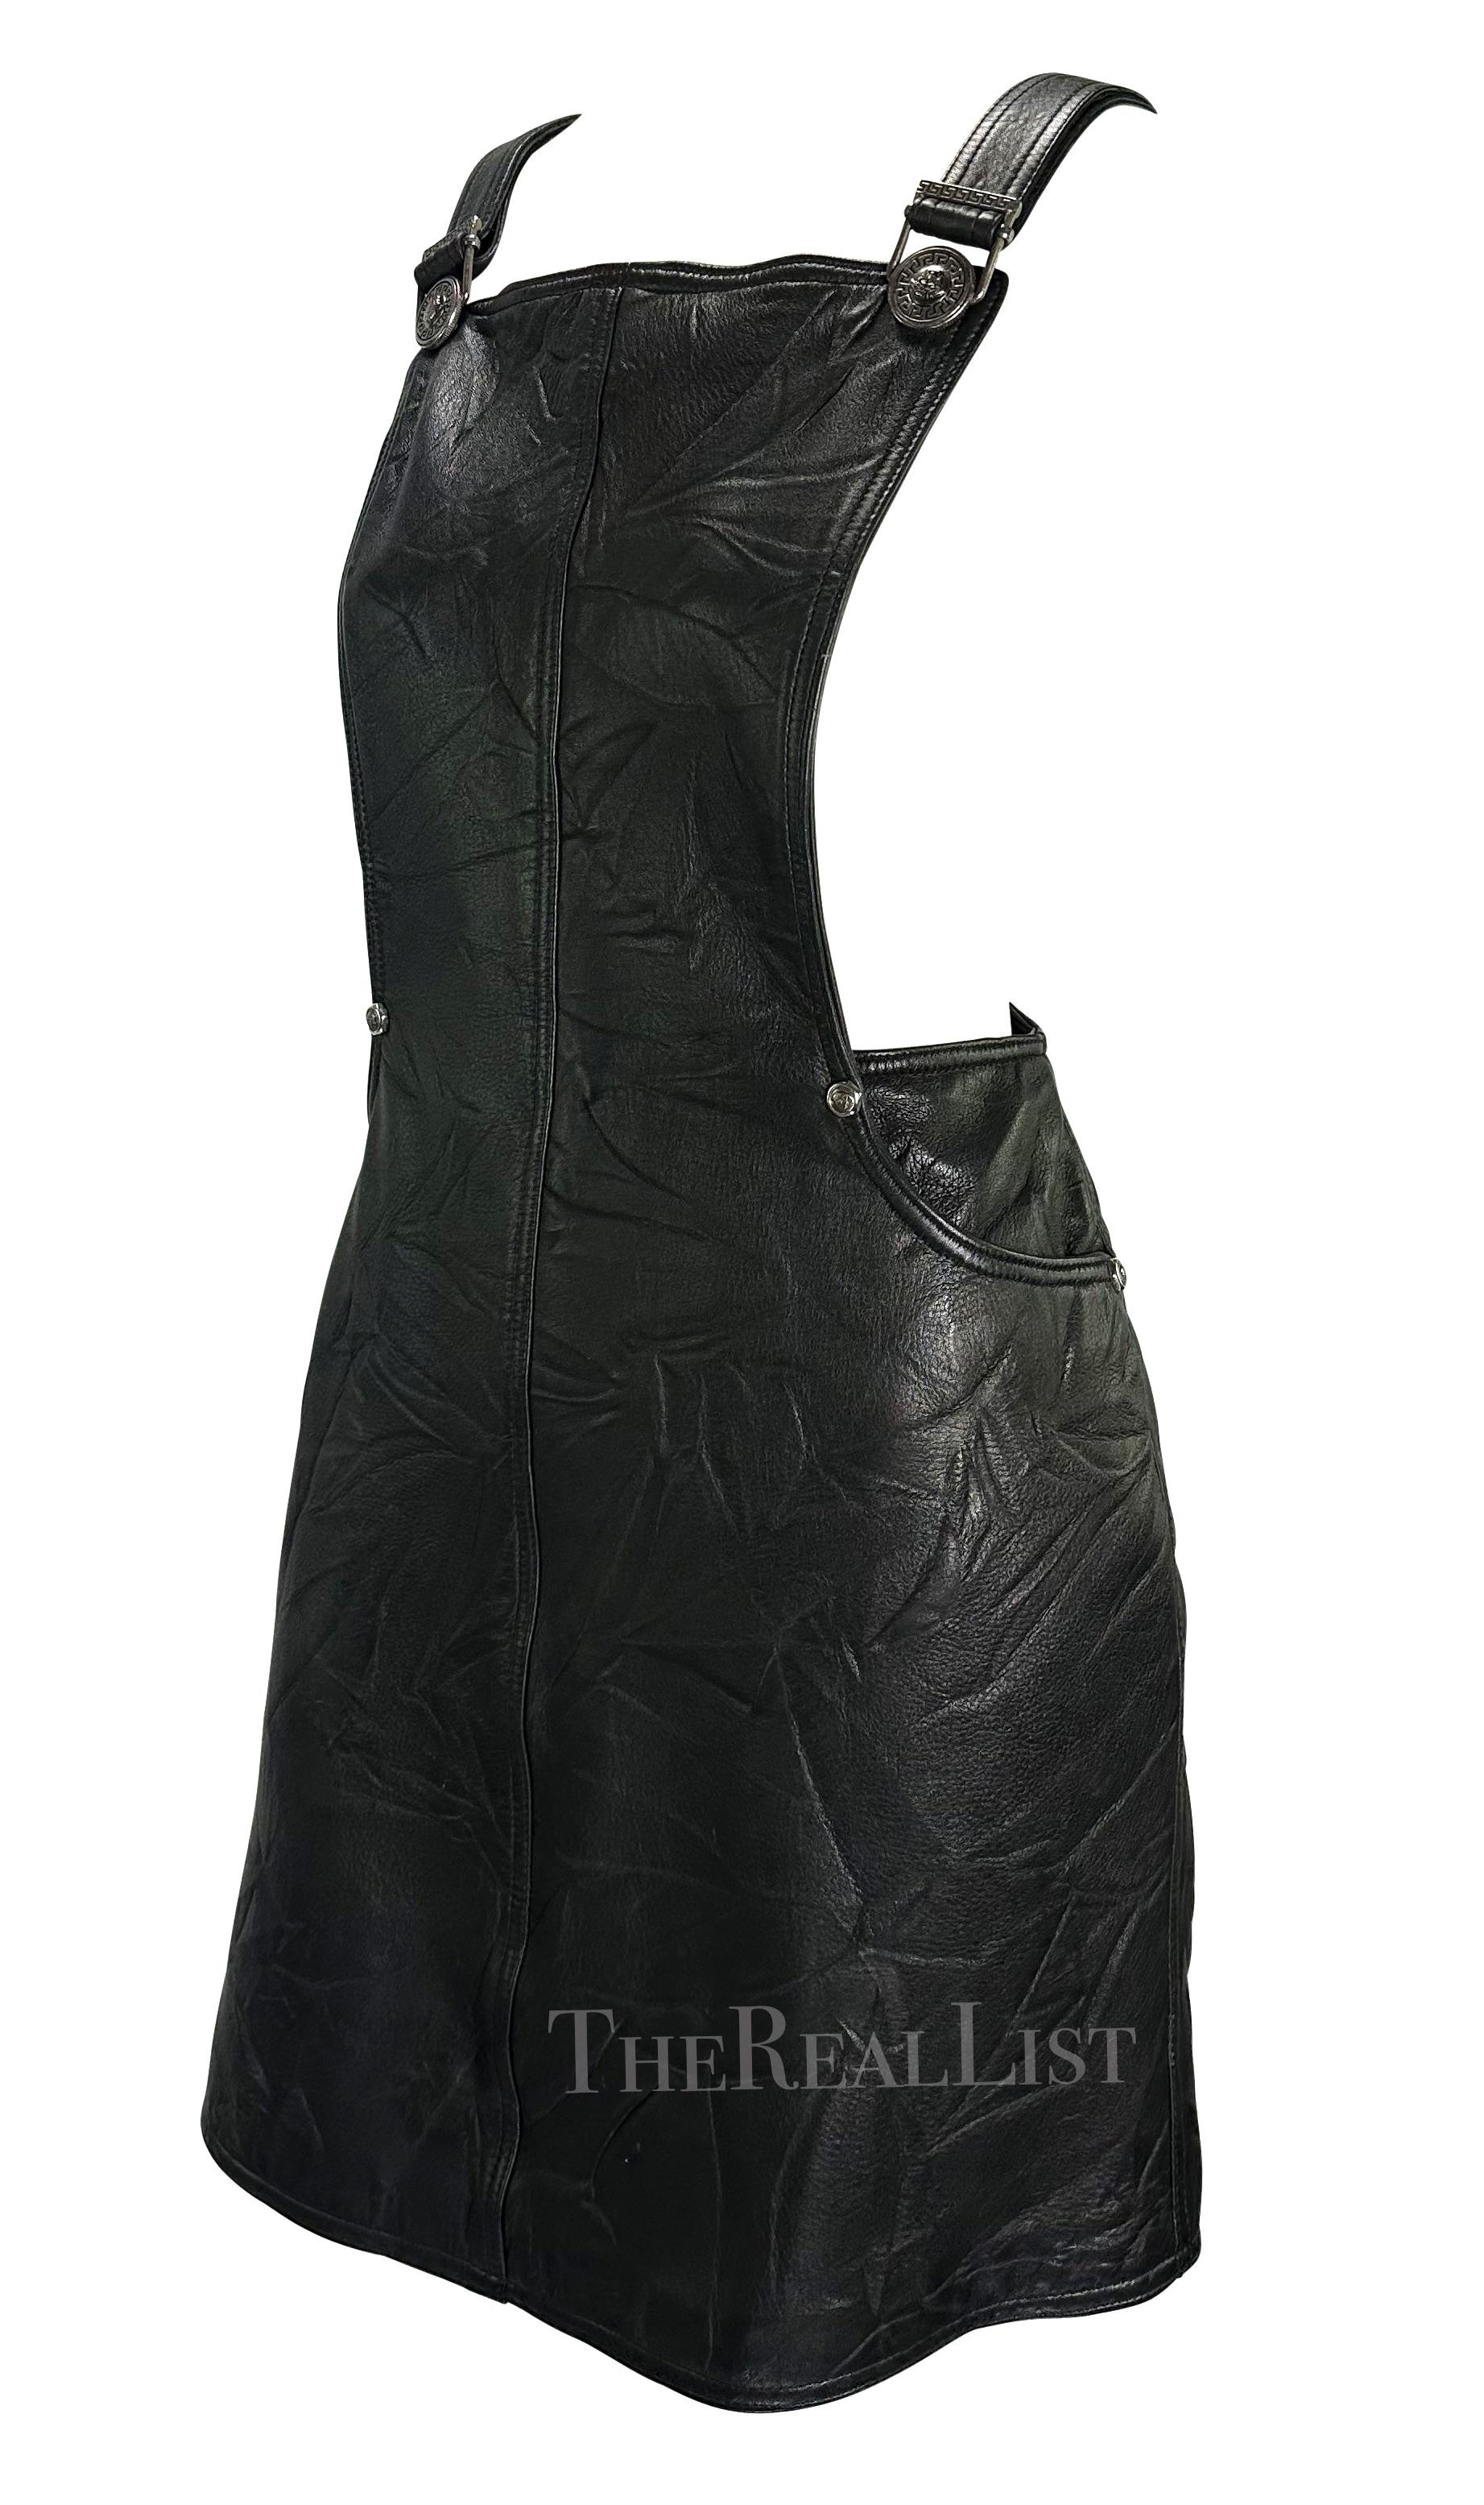 Voici une fabuleuse robe d'ensemble en cuir noir Gianni Versace, conçue par Gianni Versace. Issue de la collection automne/hiver 1994, cette magnifique robe en cuir est intentionnellement froissée et plissée - un motif qui a été largement utilisé